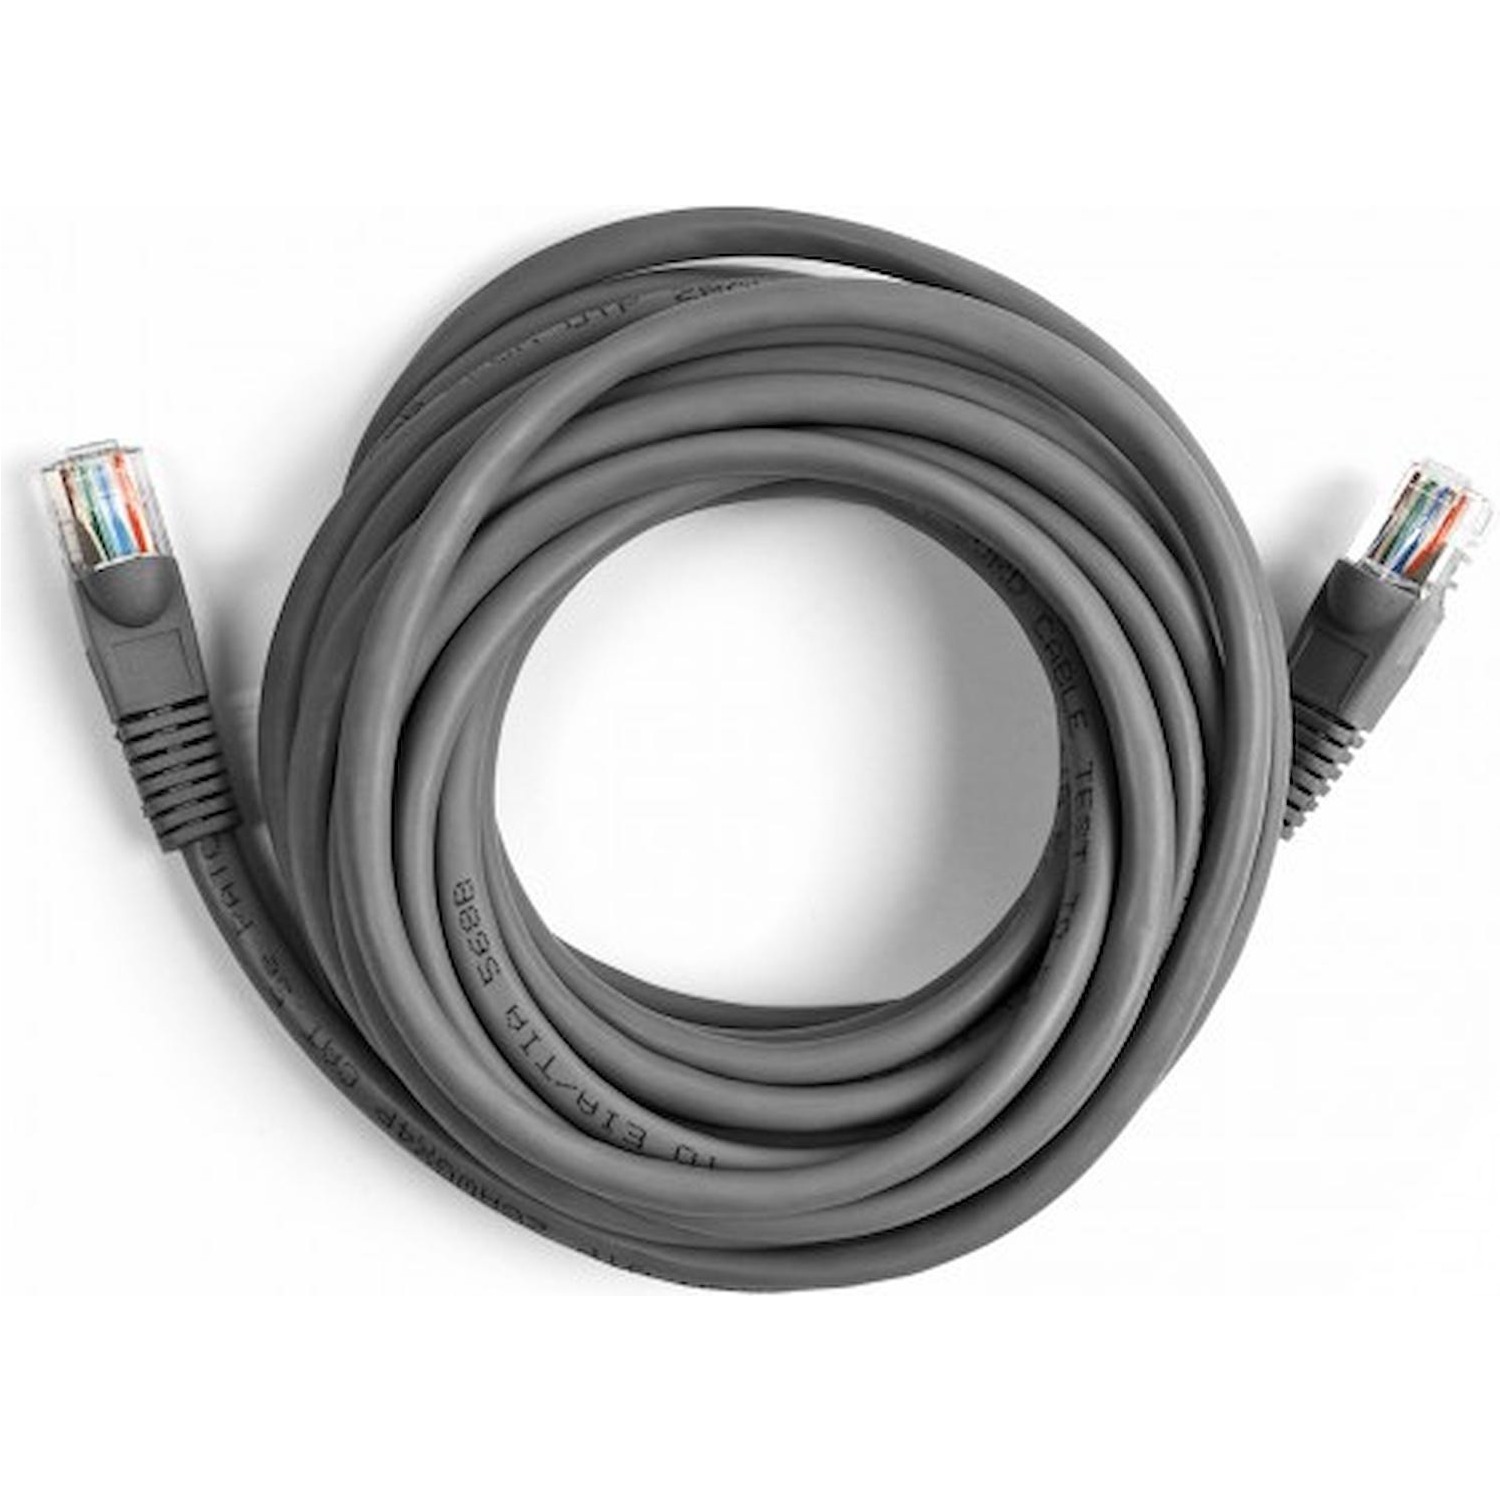 Immagine per Cavo di rete per PC Ekon UTP cat 5e colore grigio, connettori RJ45, lunghezza cavo 5 metri da DIMOStore